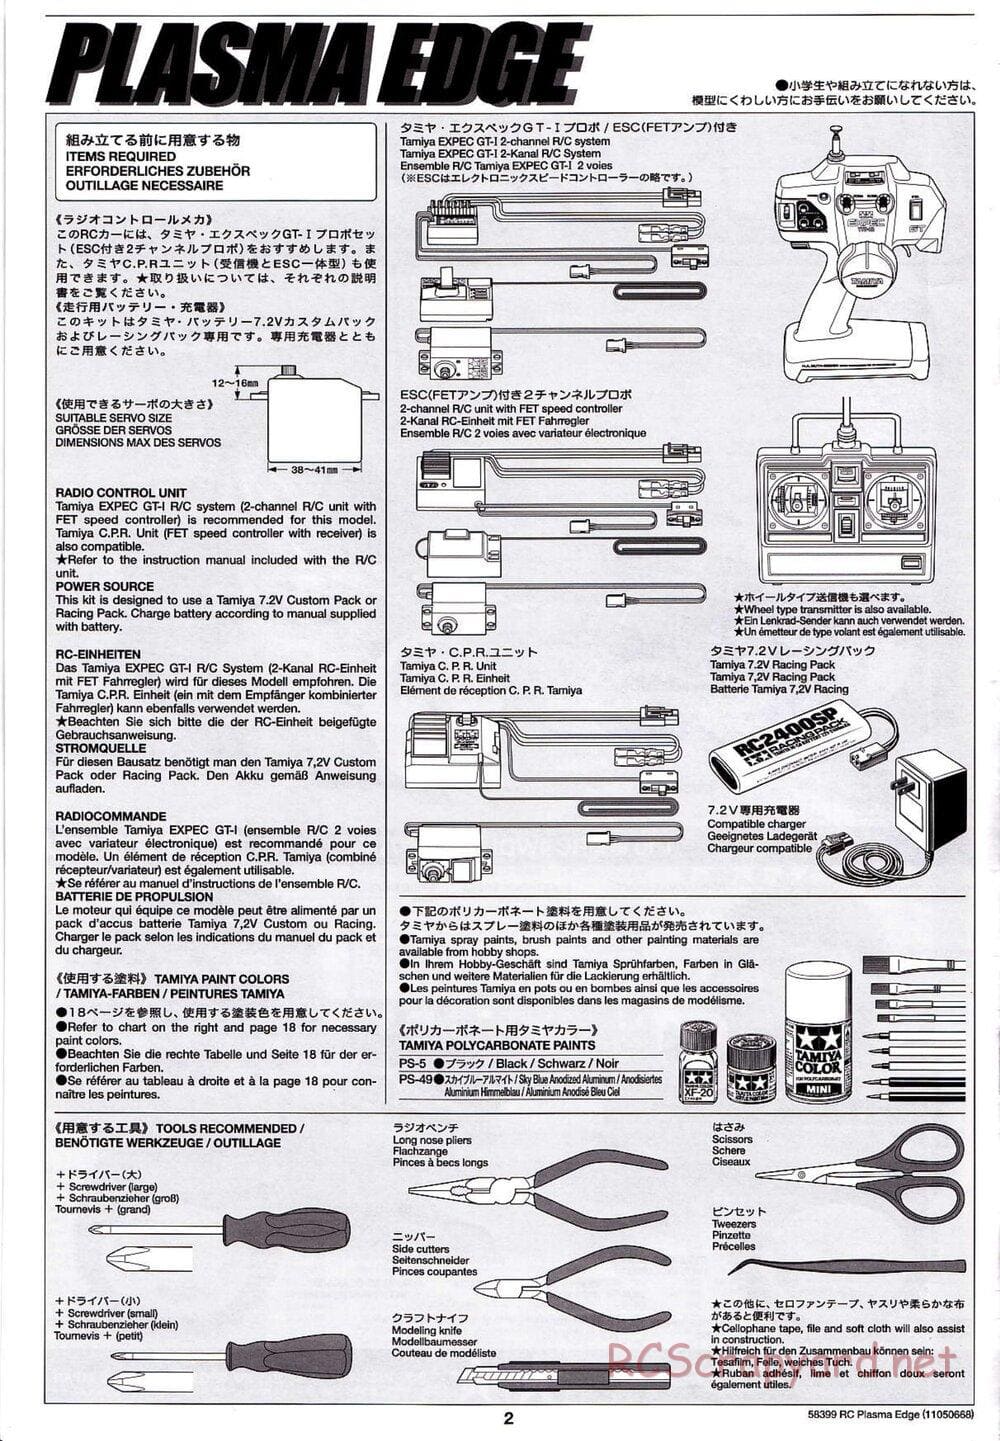 Tamiya - Plasma Edge Chassis - Manual - Page 2